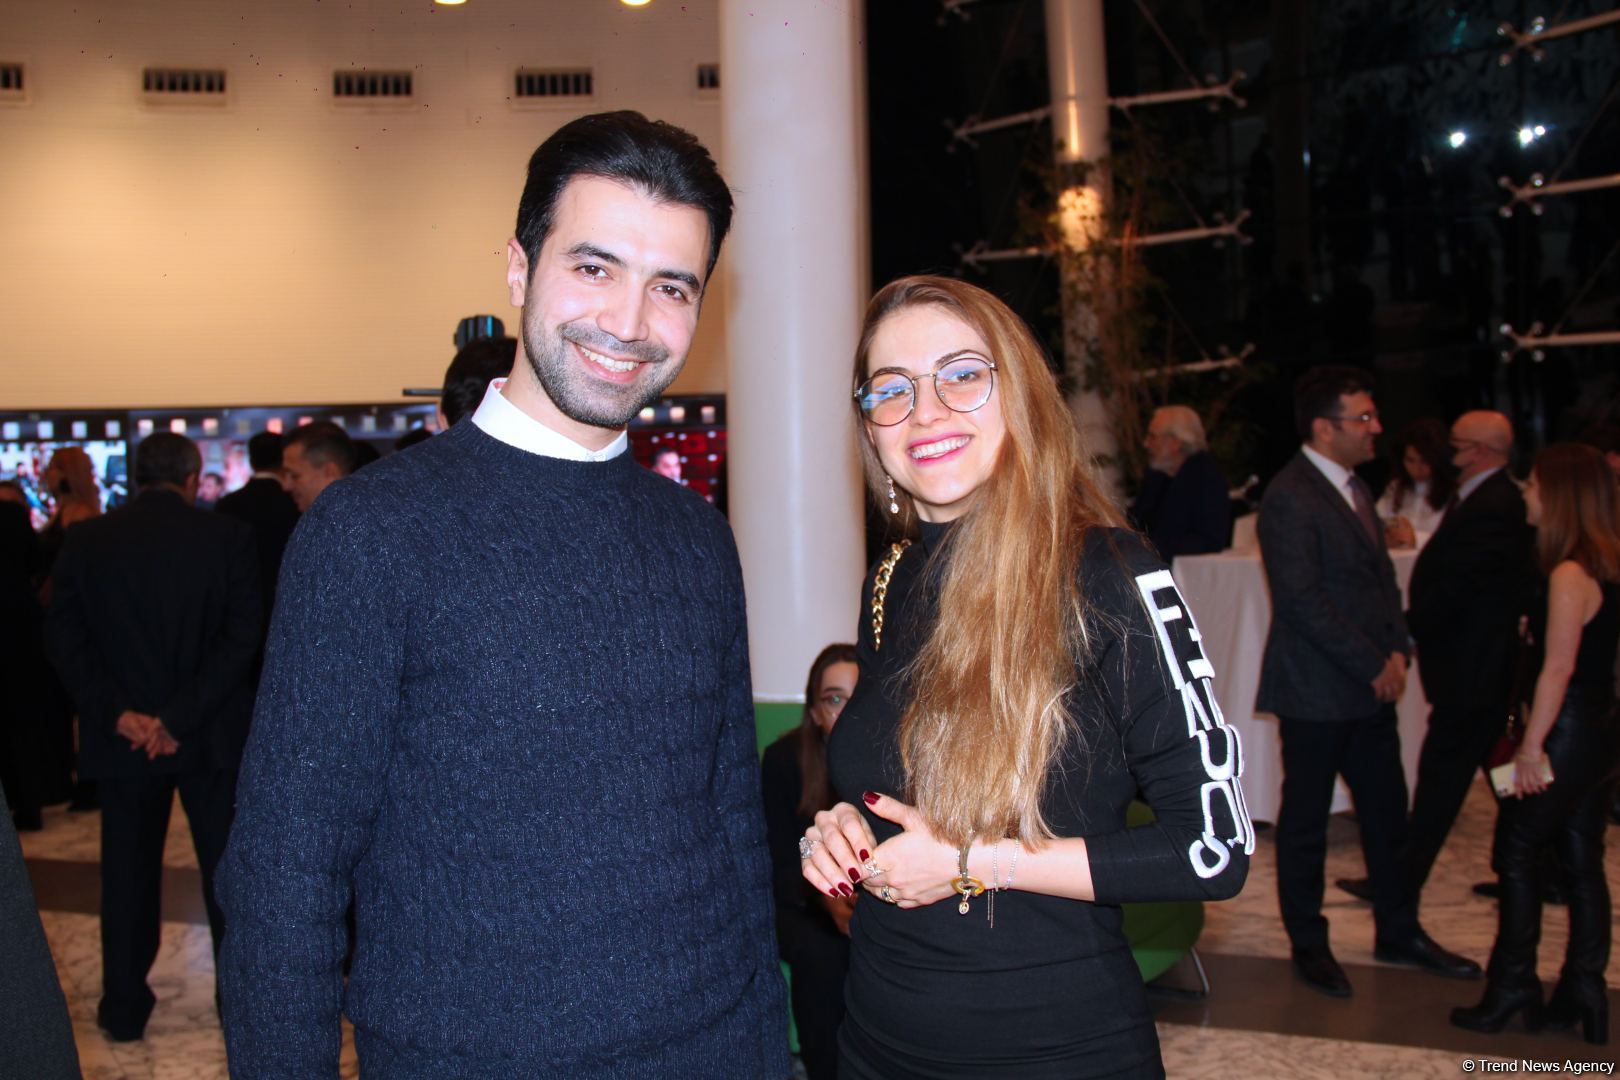 В Баку торжественно отметили юбилей Пярвиза Гулиева – легенды азербайджанского кинематографа (ВИДЕО,ФОТО)